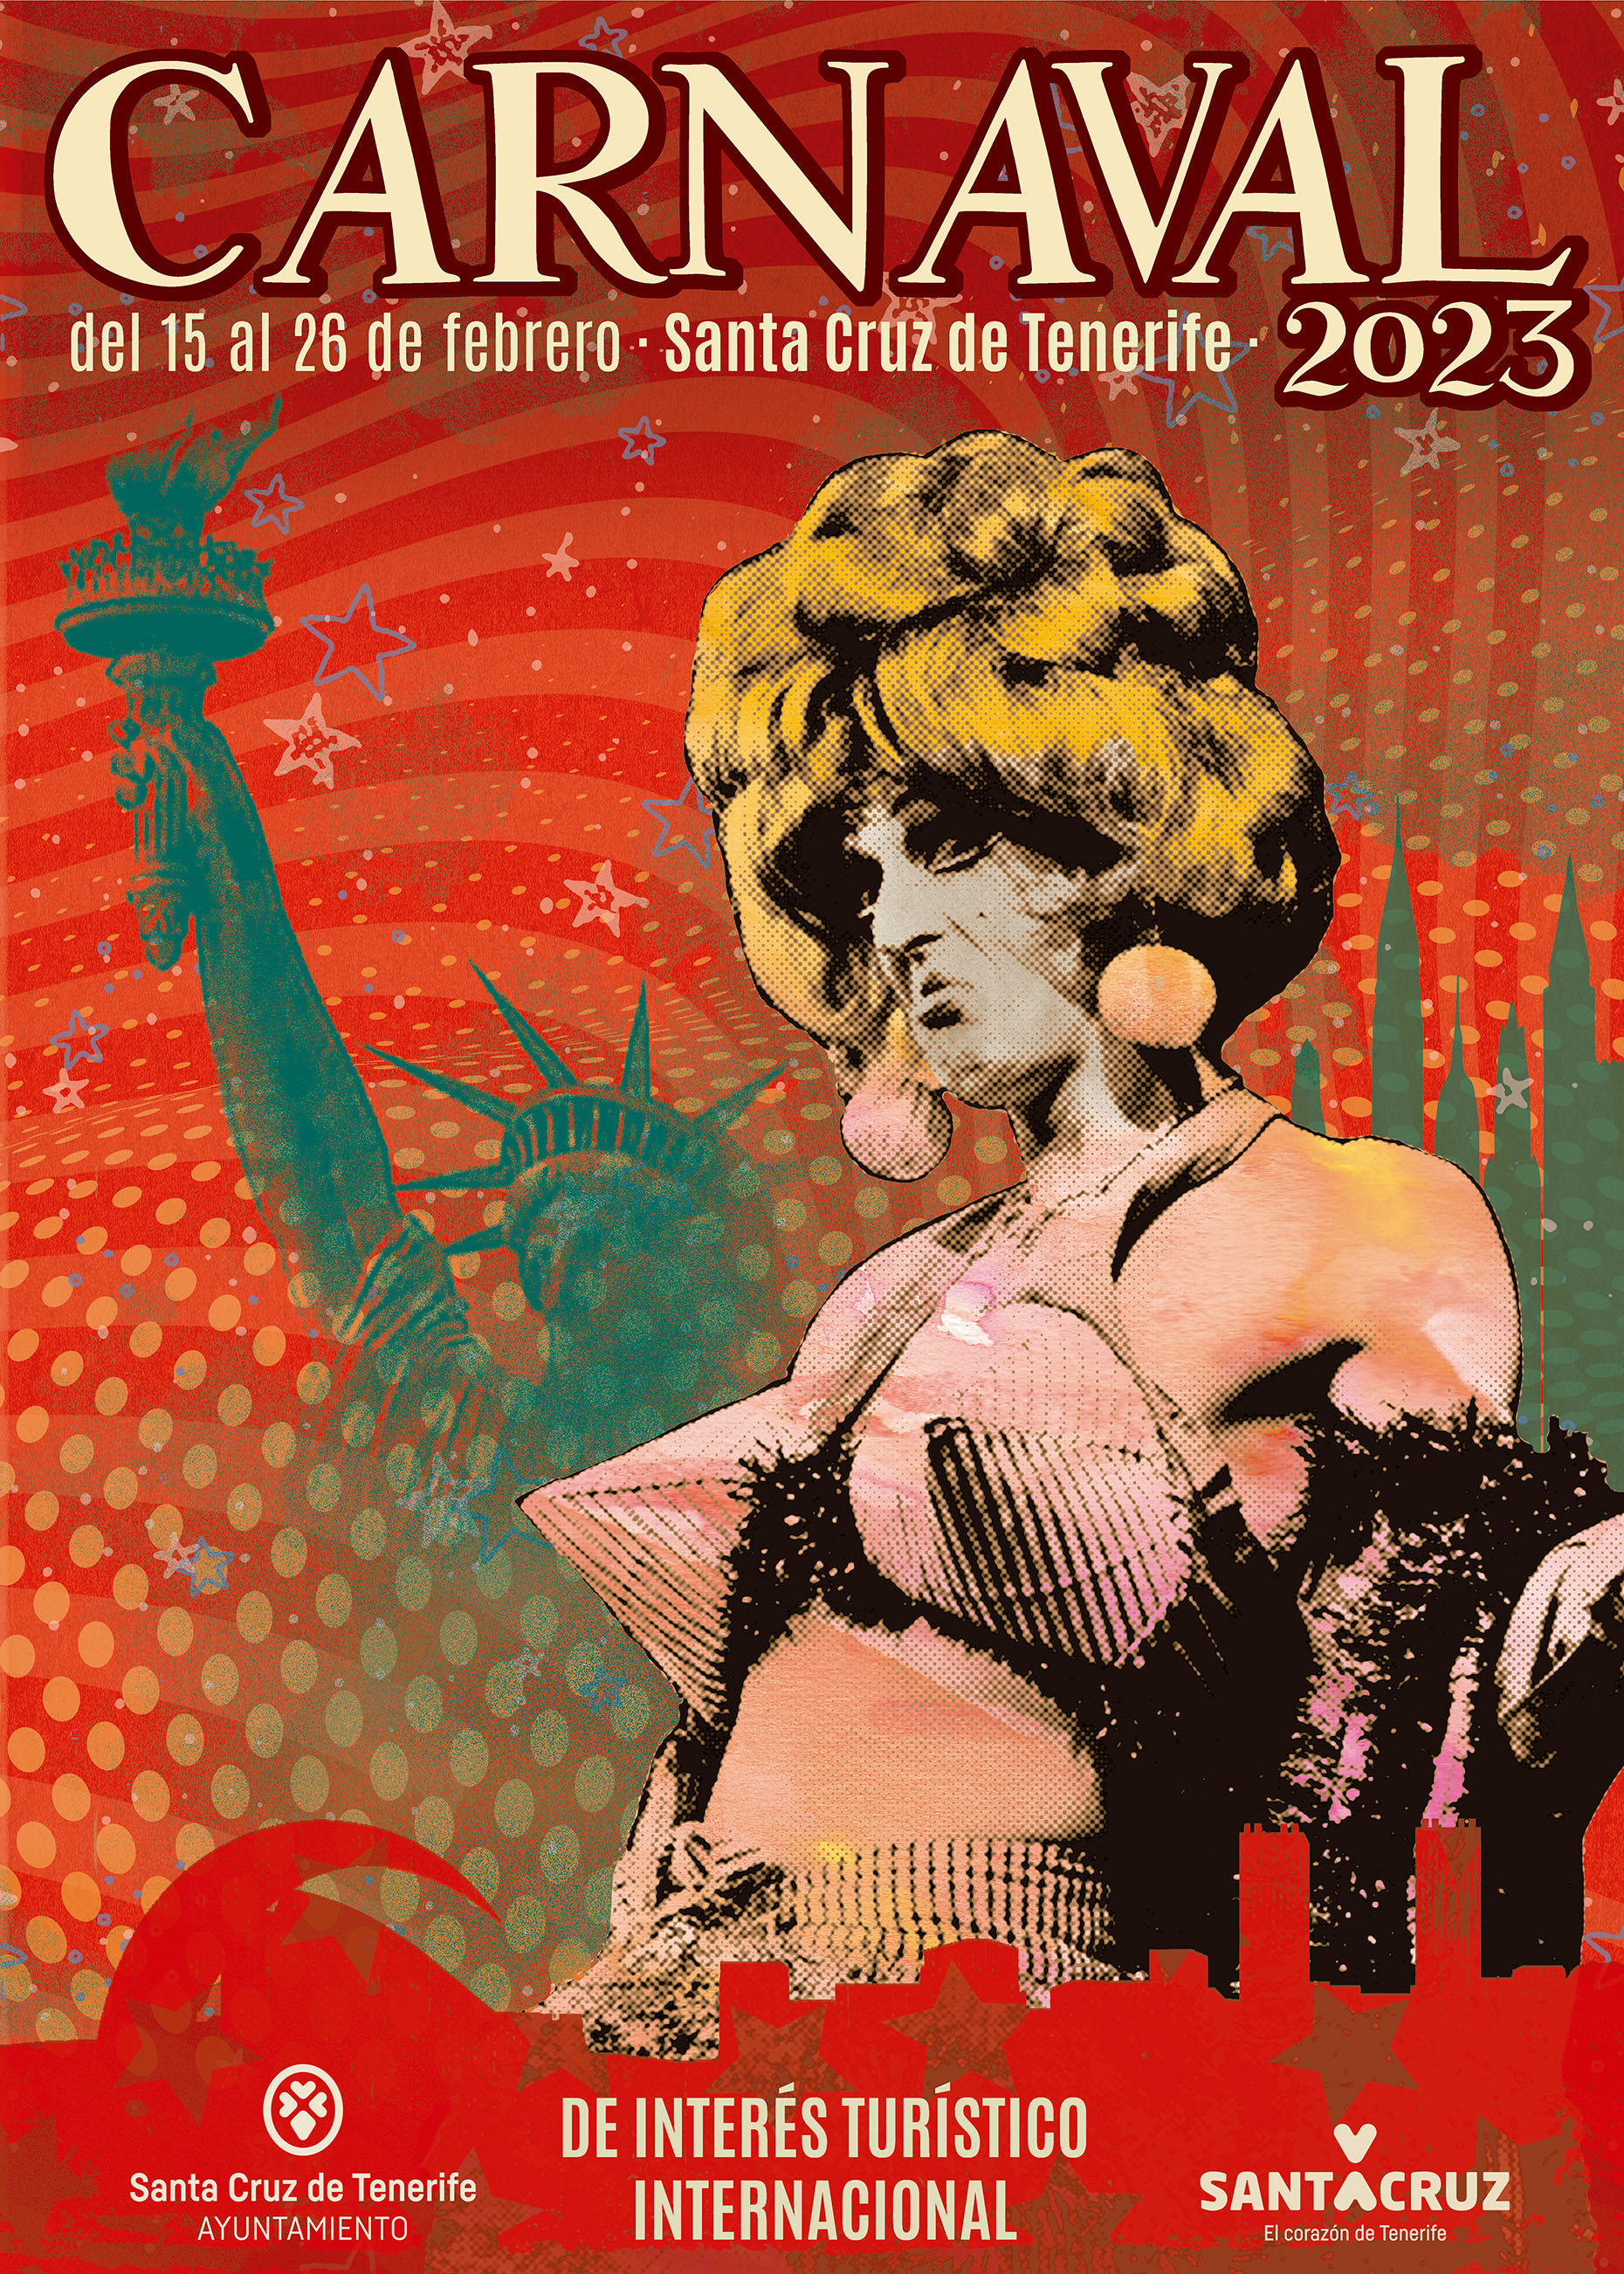 Obra que opta a convertirse en el cartel del Carnaval 2023